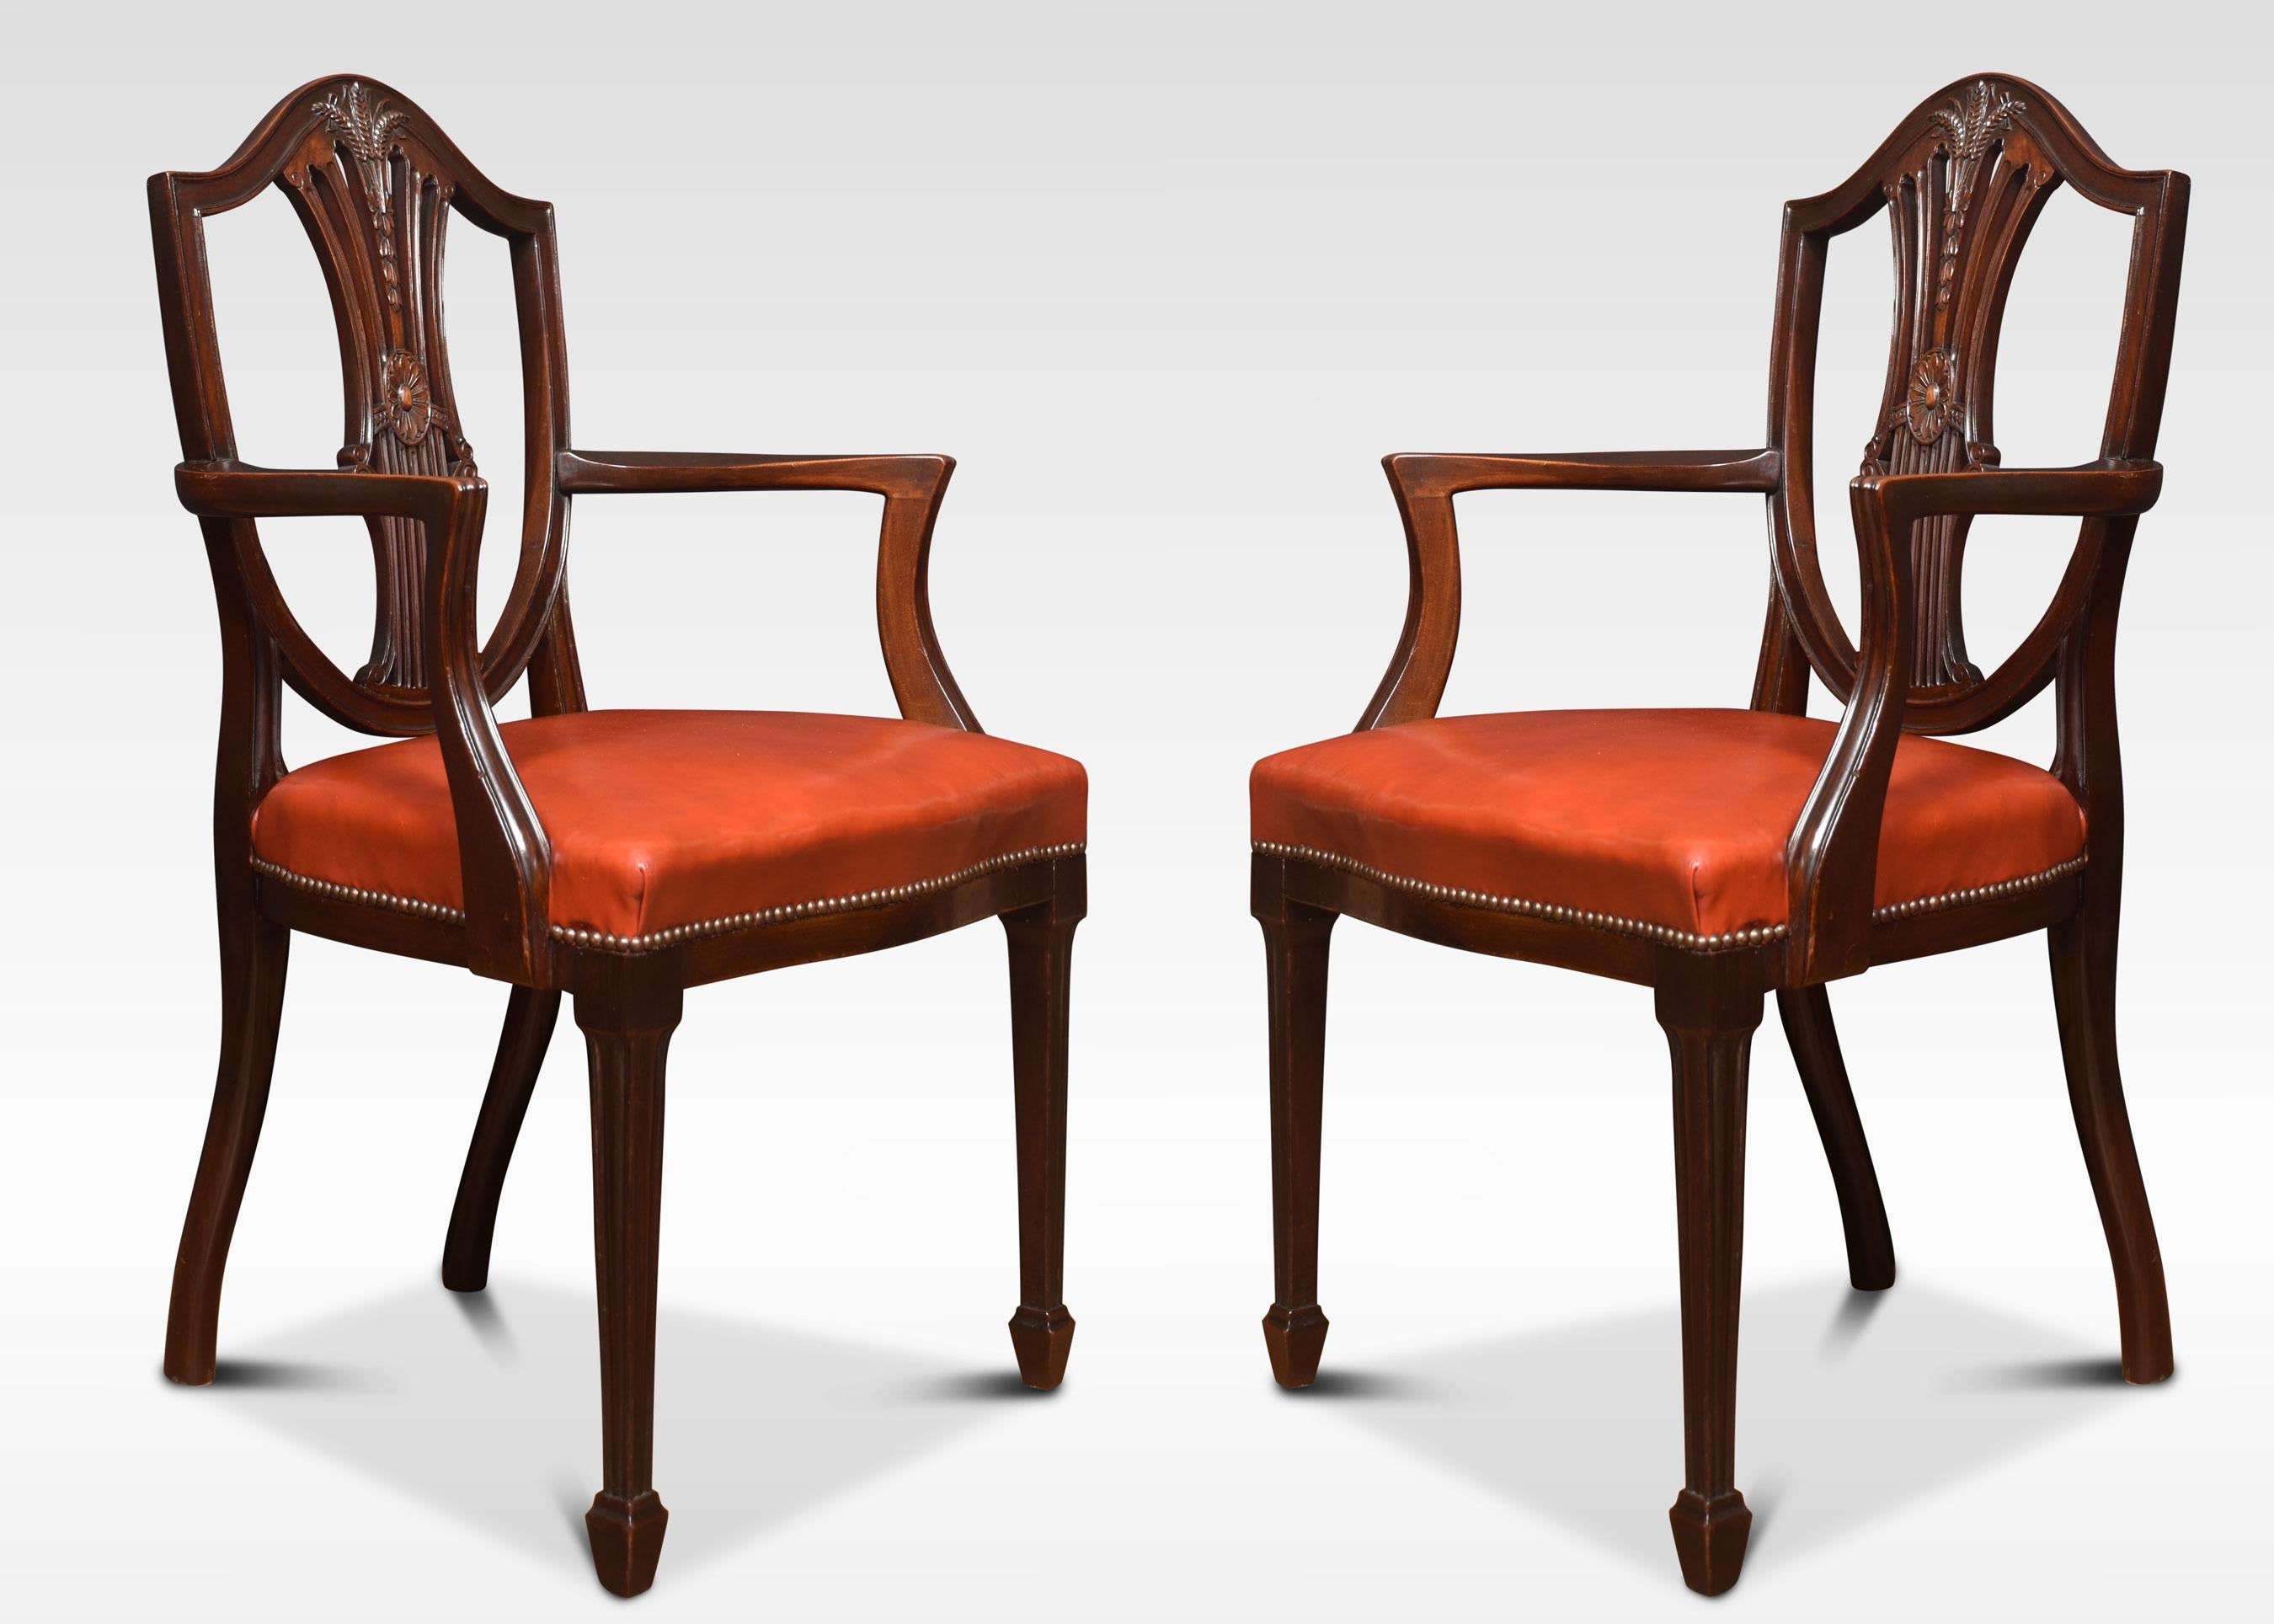 Eine Reihe von acht Mahagoni (sechs Stühle zwei Schnitzer) Hepplewhite Stil Esszimmerstühle mit durchbrochenen wheatsheaf geschnitzt splats über gepolsterte Ledersitze. Das Ganze steht auf quadratischen, spitz zulaufenden Beinen, die in Spatenfüßen